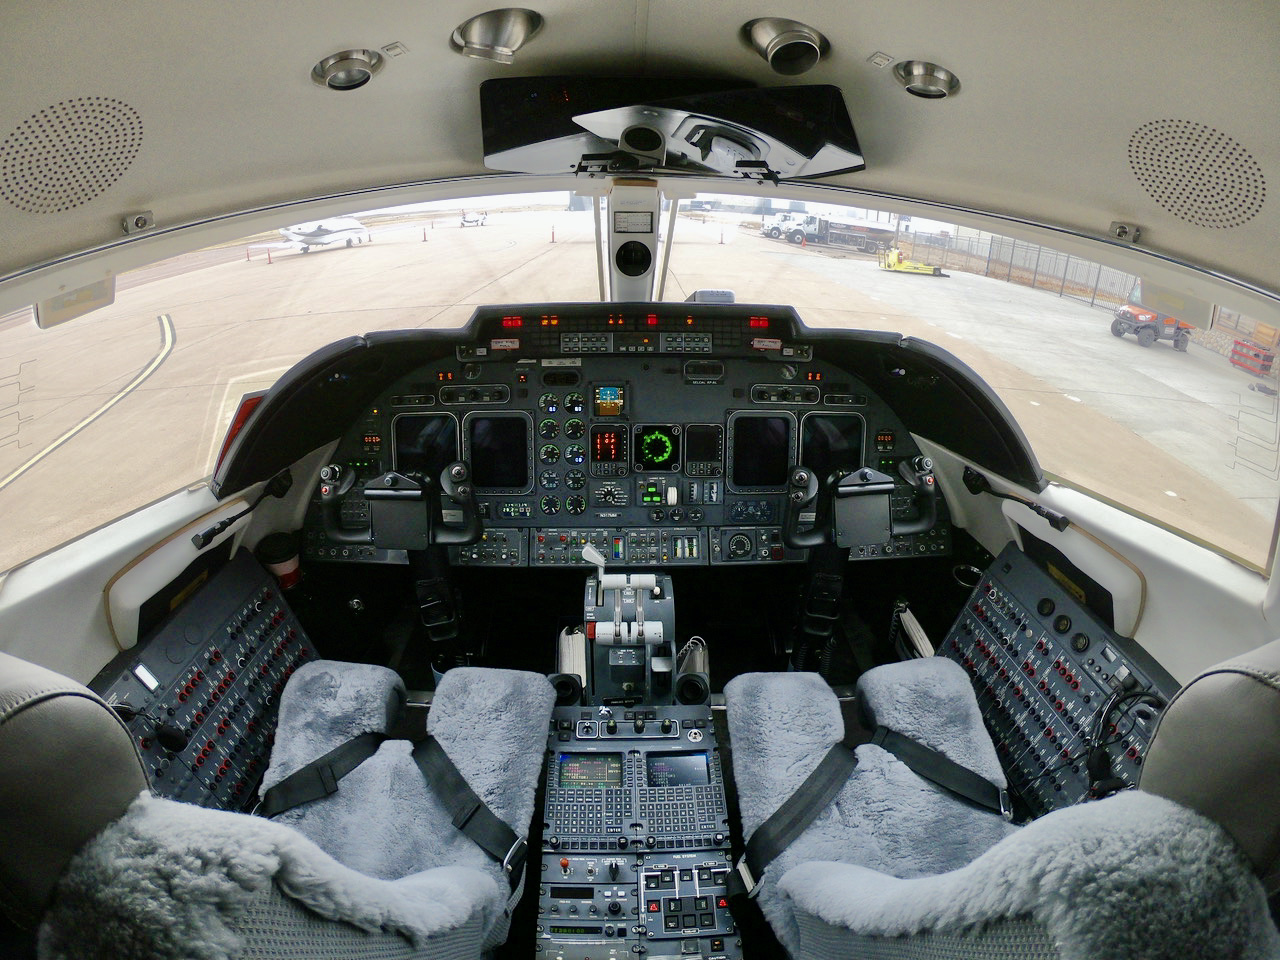 2002 Learjet 60 sn 236